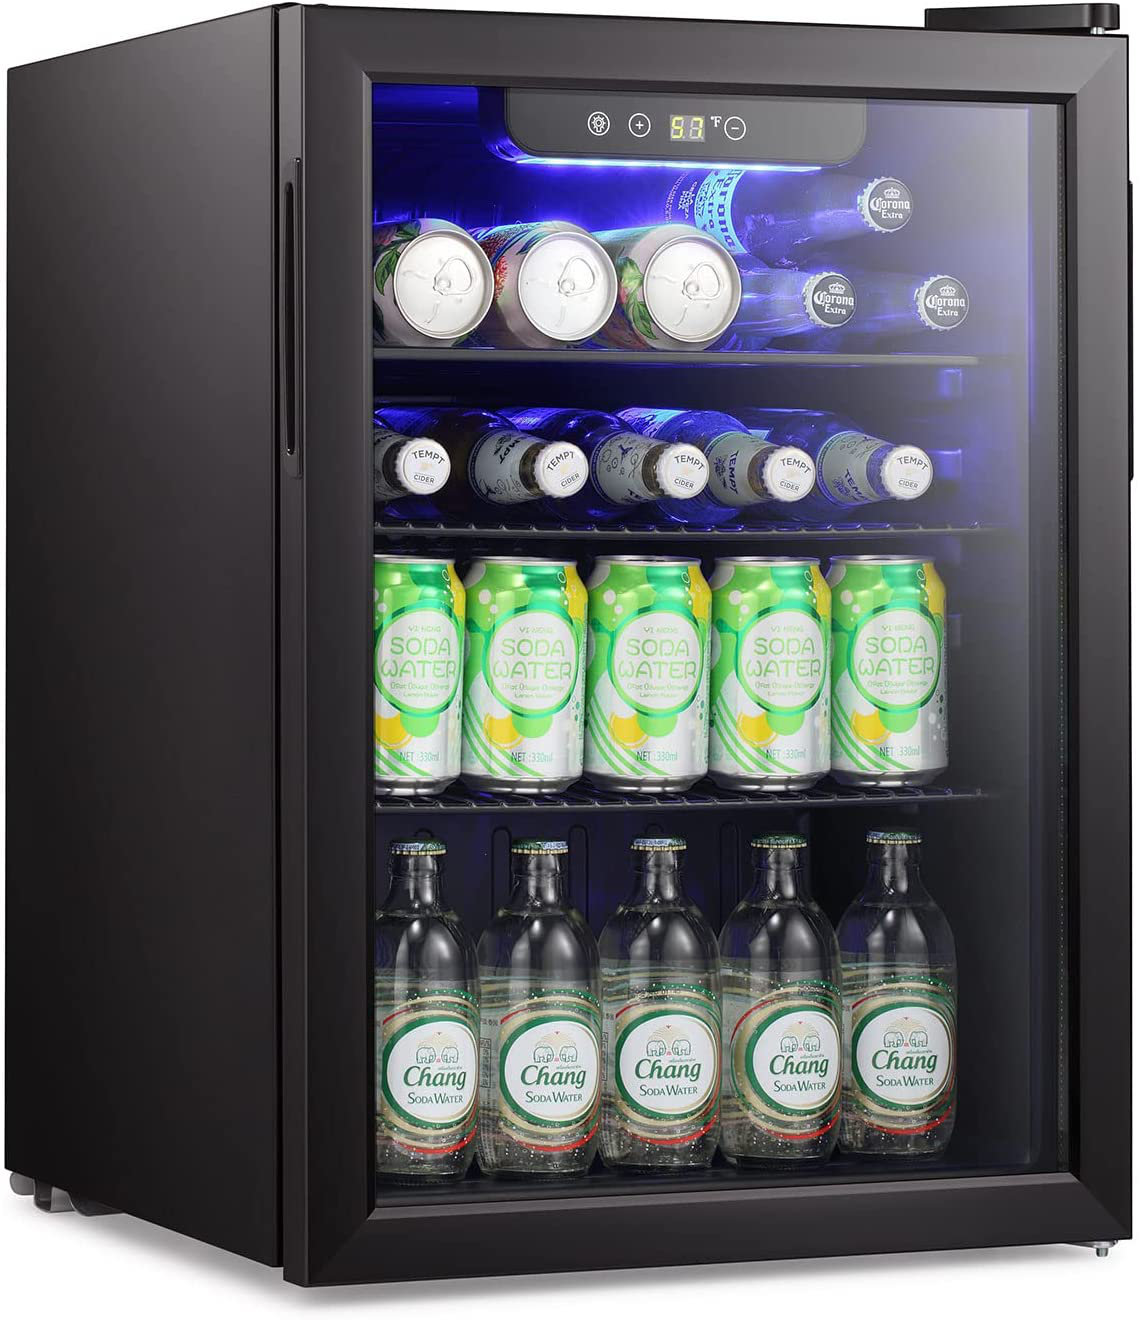 https://assets.wfcdn.com/im/66401785/compr-r85/2161/216154211/1929-25-bottle-single-zone-freestanding-wine-refrigerator-beverage-cooler.jpg